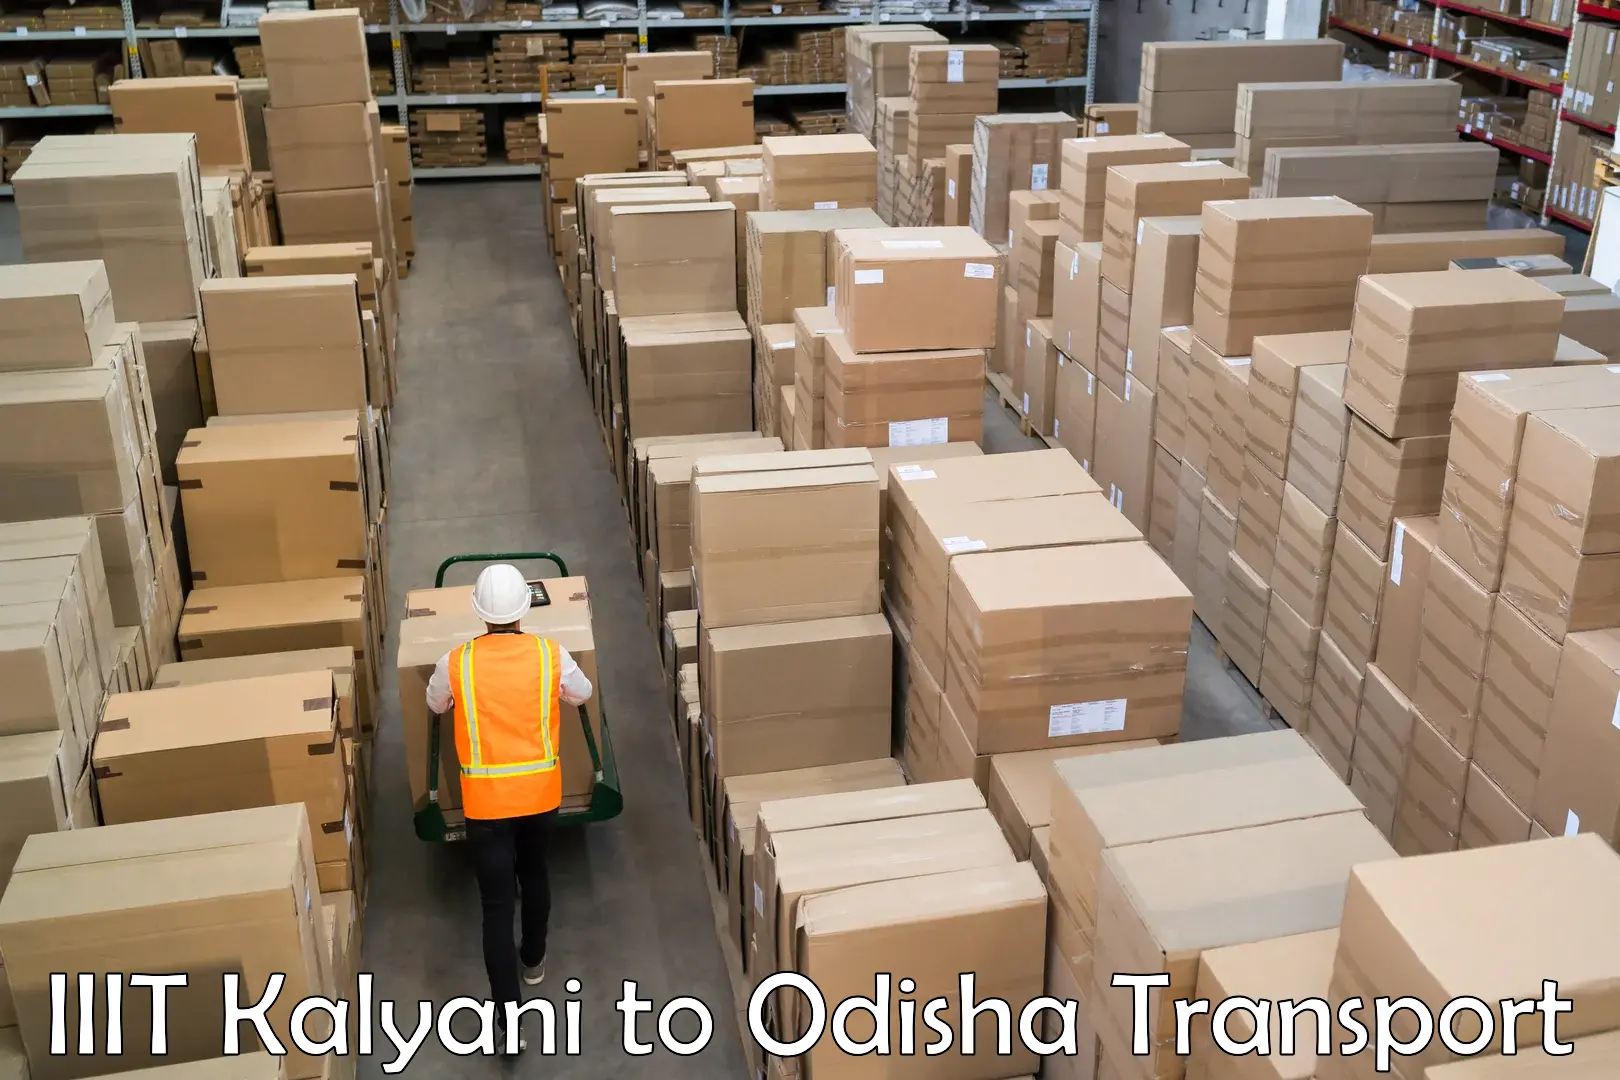 Bike shipping service in IIIT Kalyani to NIT Rourkela